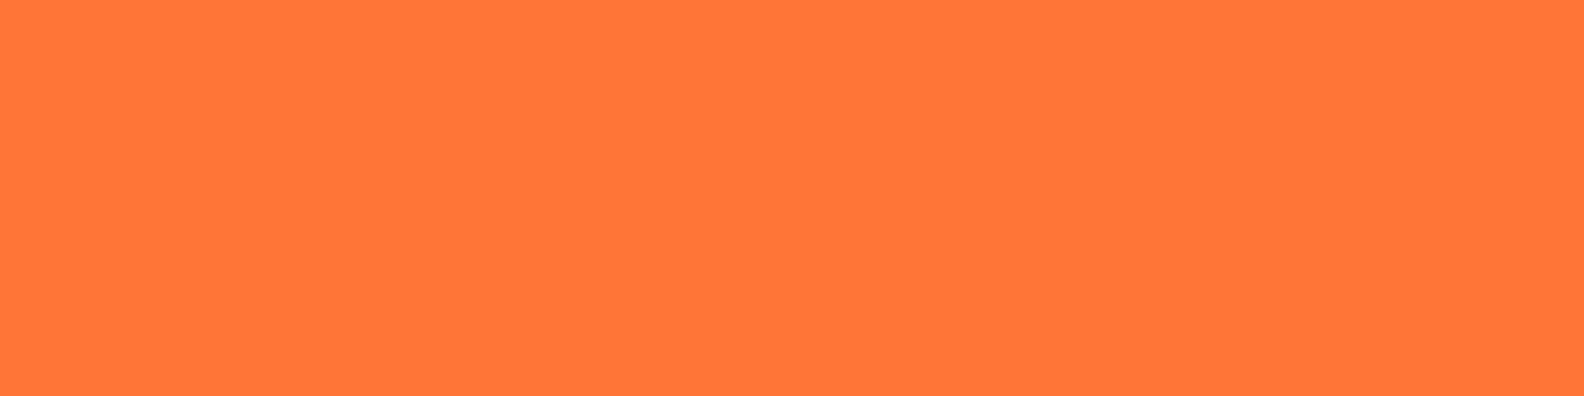 1584x396 Orange Crayola Solid Color Background